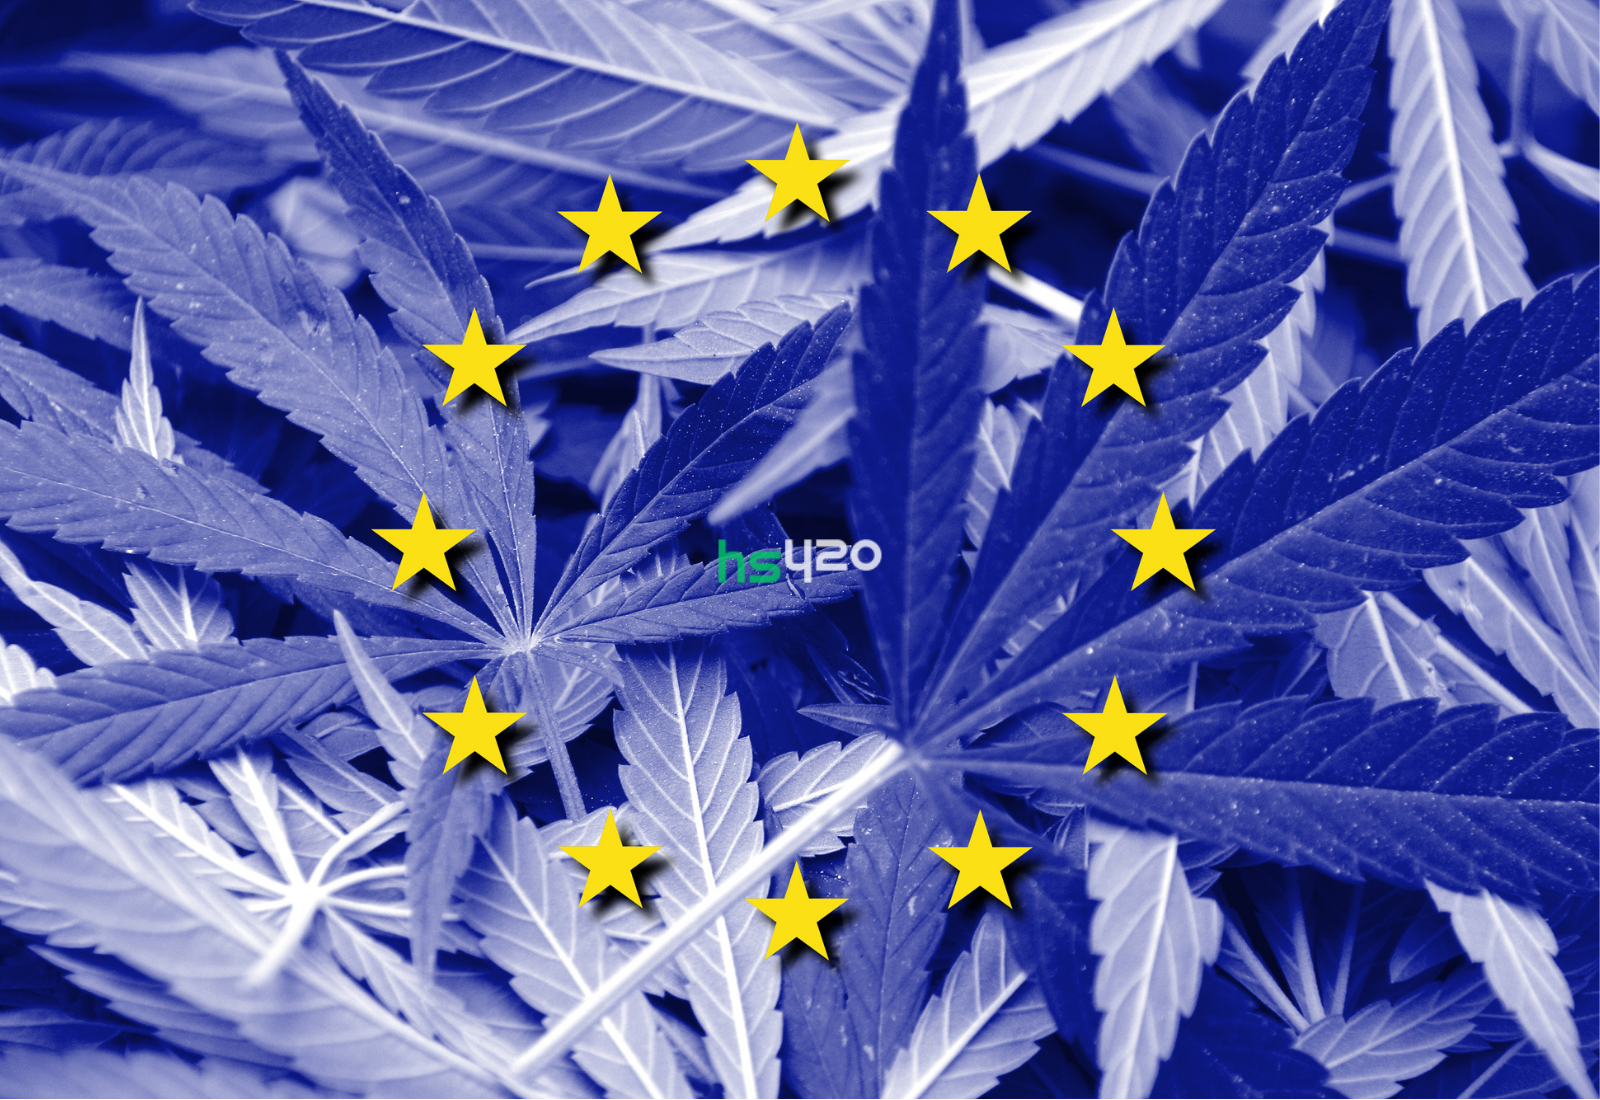 Евросоюз марихуана марихуана часть 2